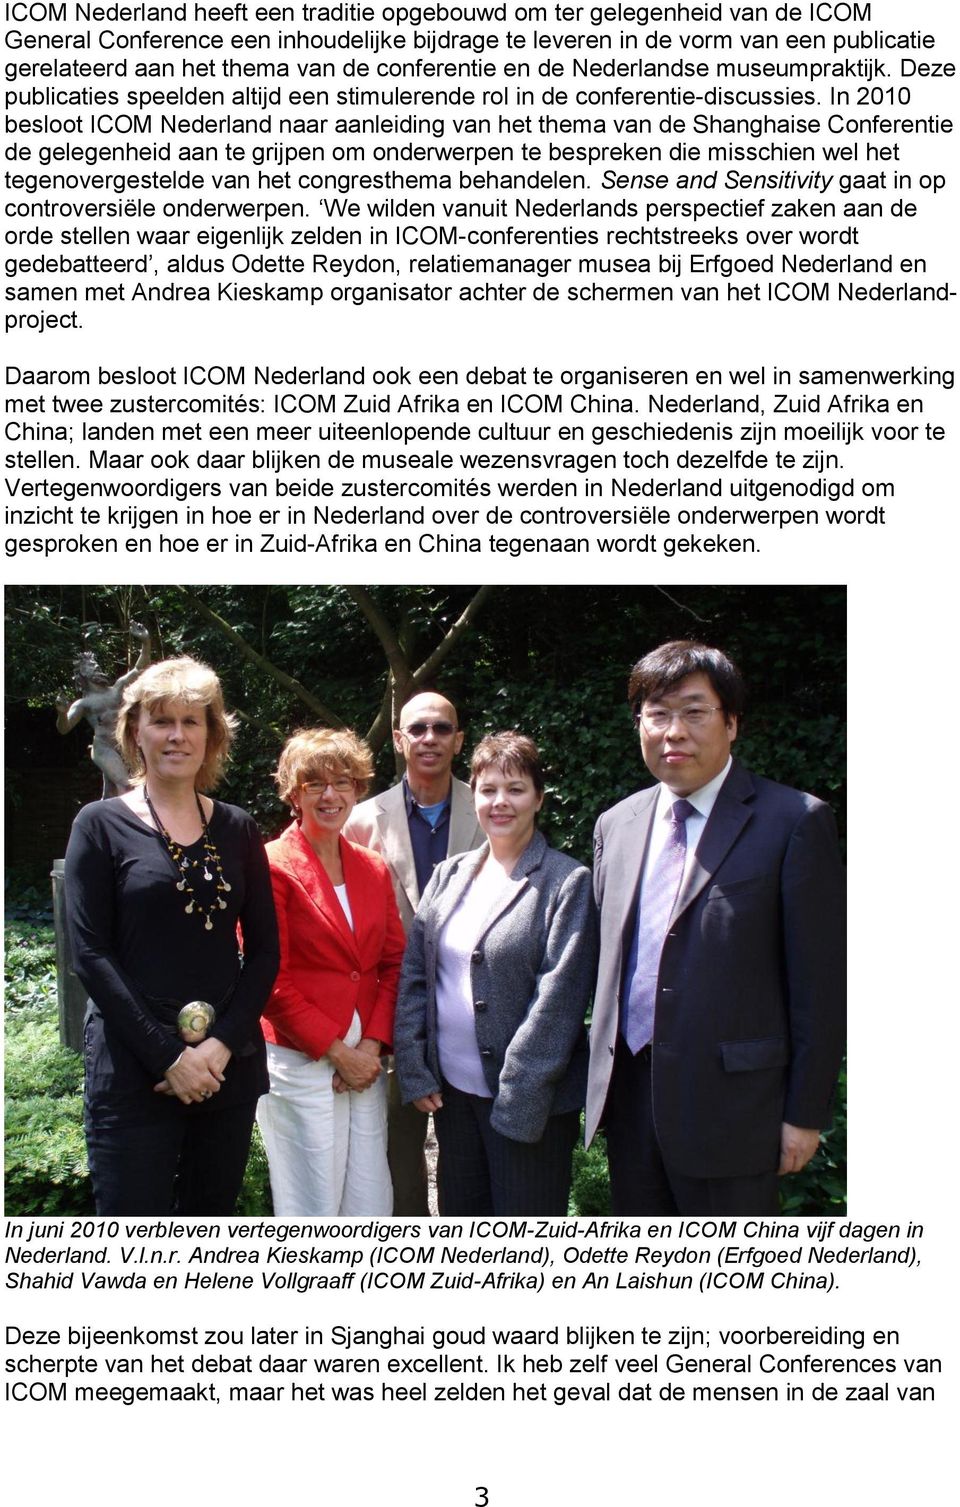 In 2010 besloot ICOM Nederland naar aanleiding van het thema van de Shanghaise Conferentie de gelegenheid aan te grijpen om onderwerpen te bespreken die misschien wel het tegenovergestelde van het